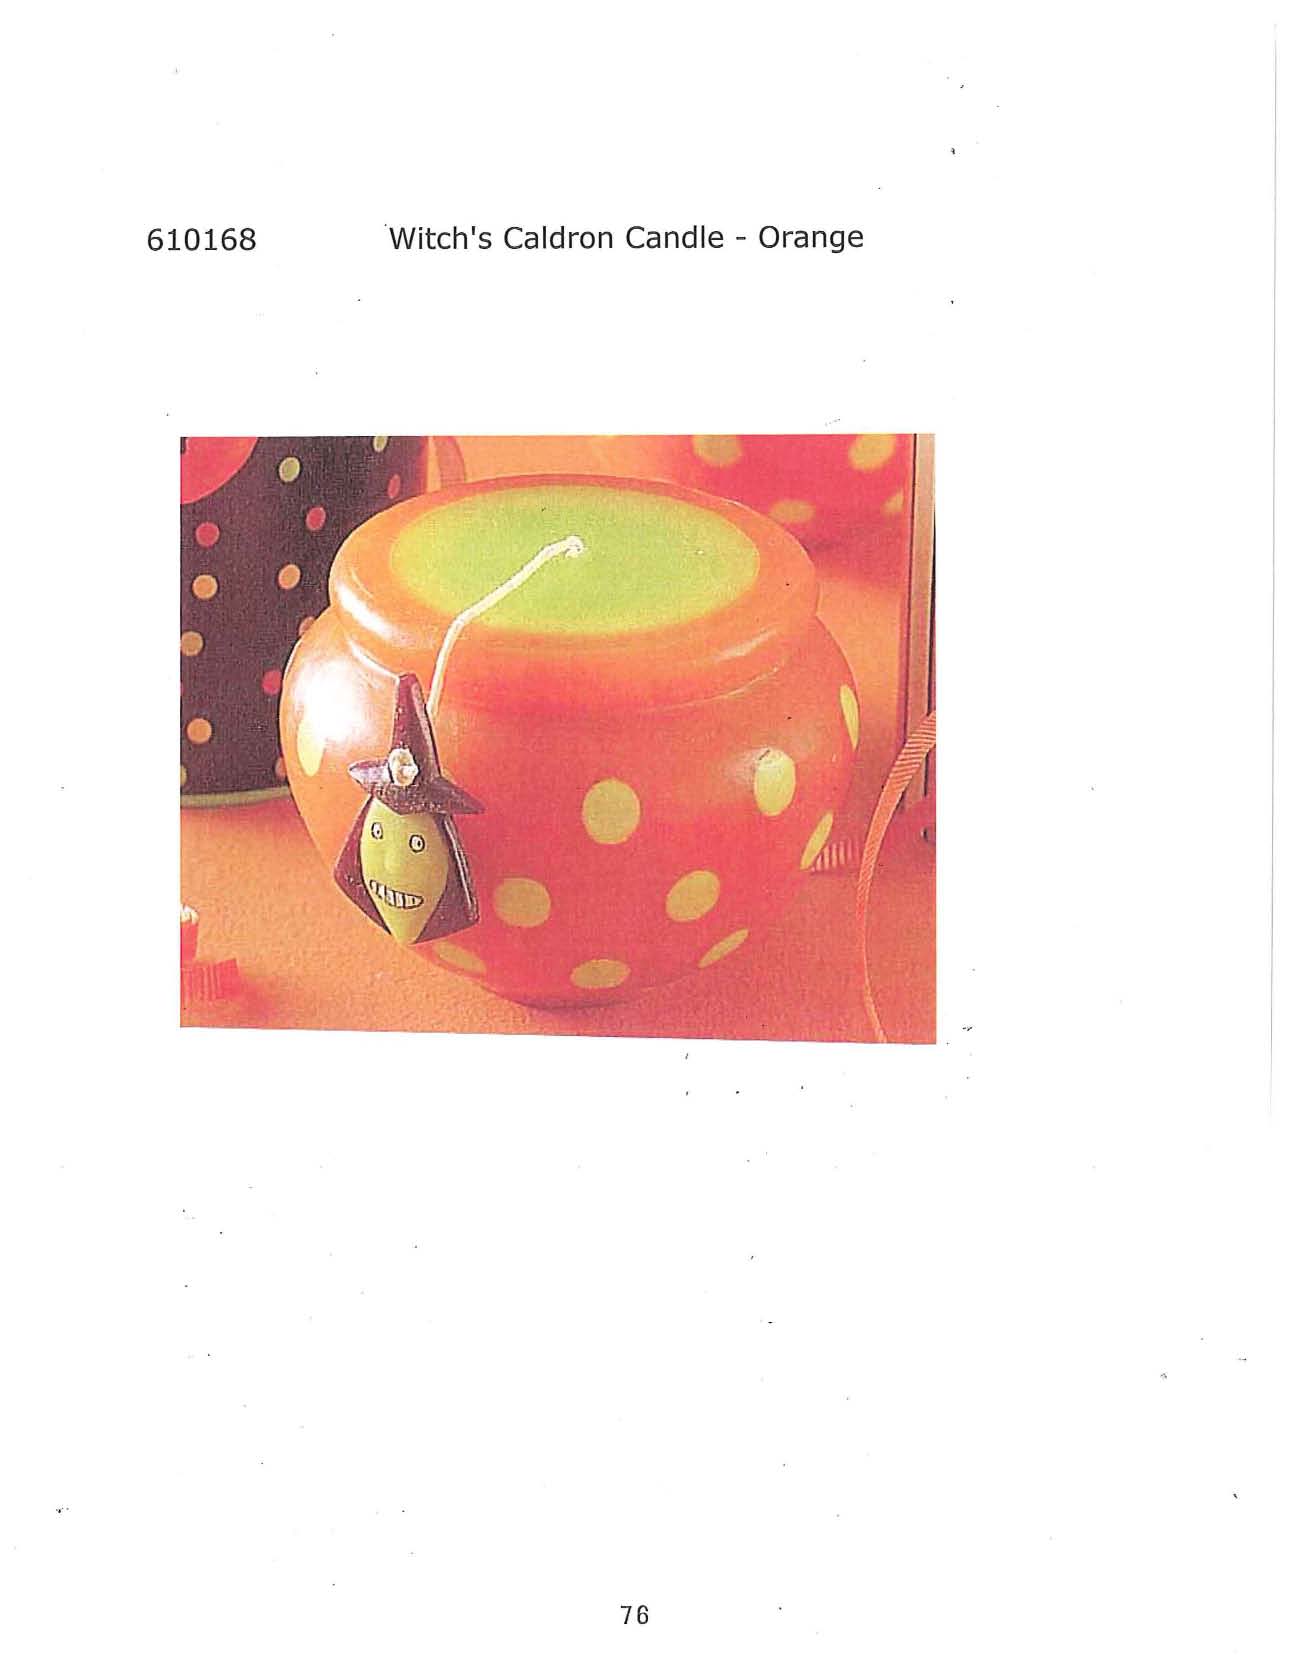 Witch's Cauldron Candle - Orange